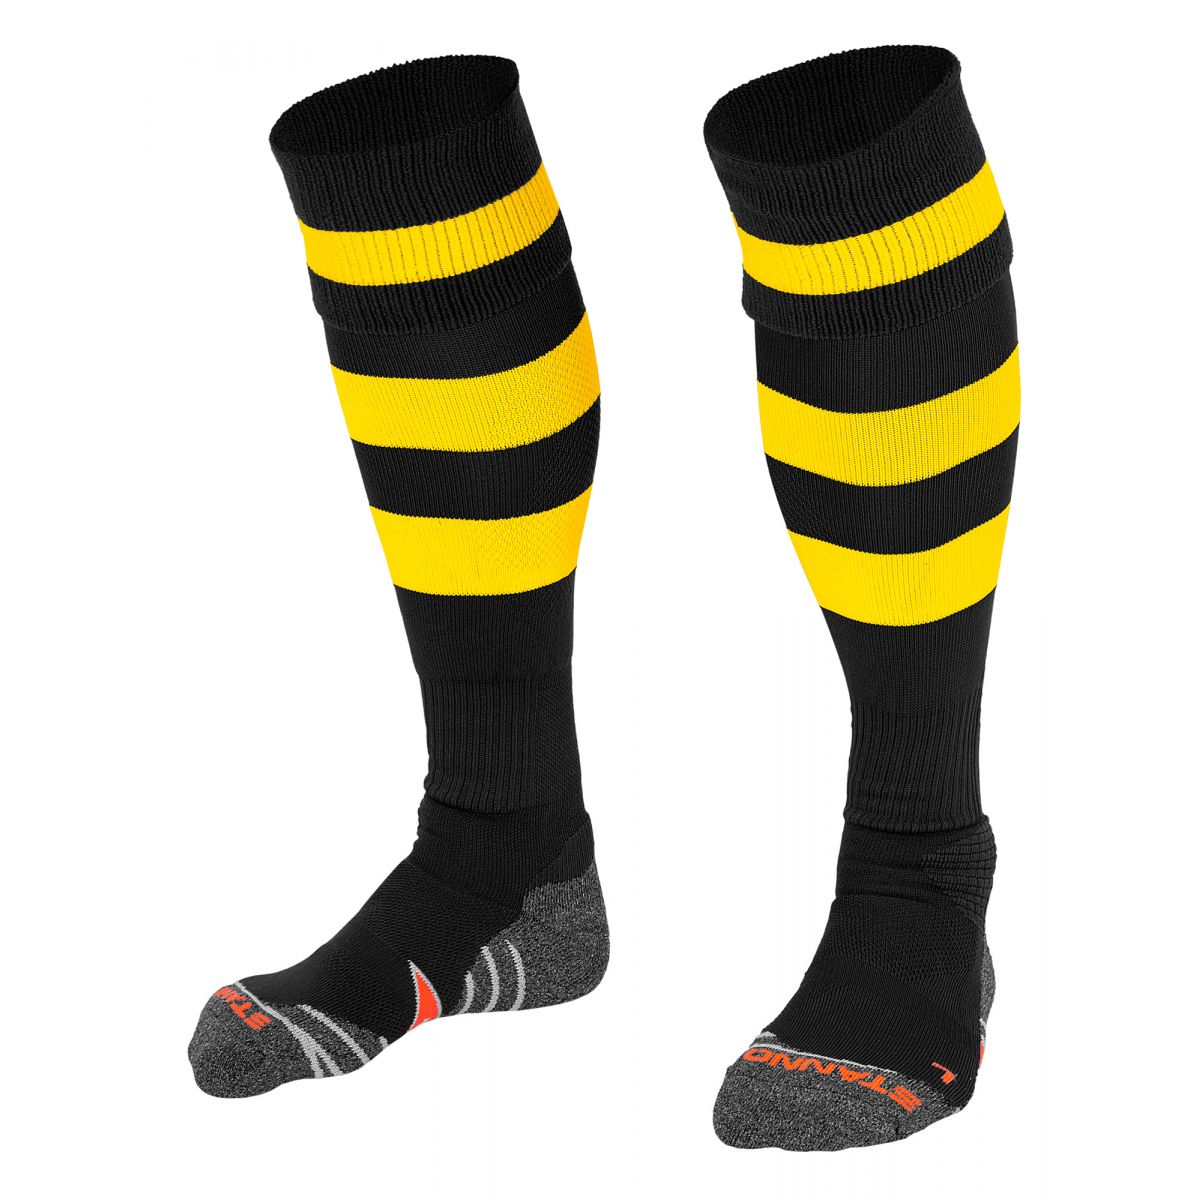 Original Sock - Black/Yellow